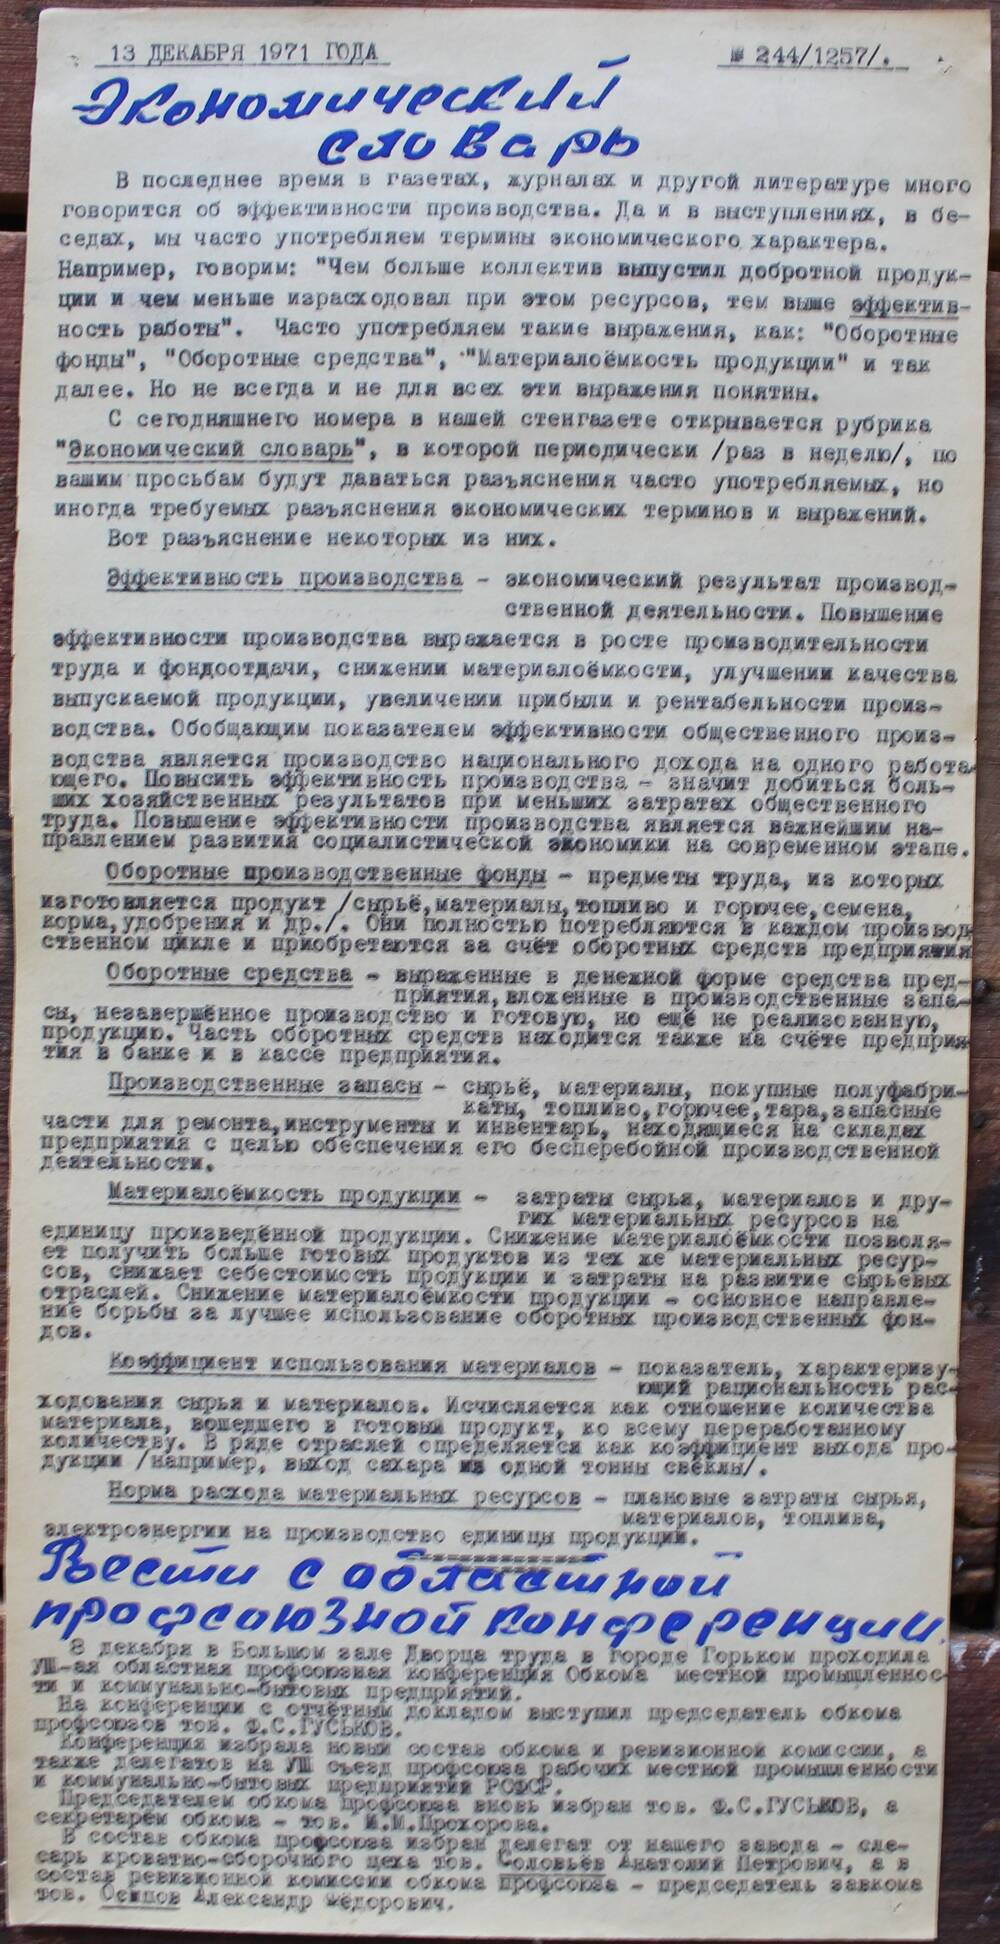 Стенгазета завода Прокатчик 1971 г.